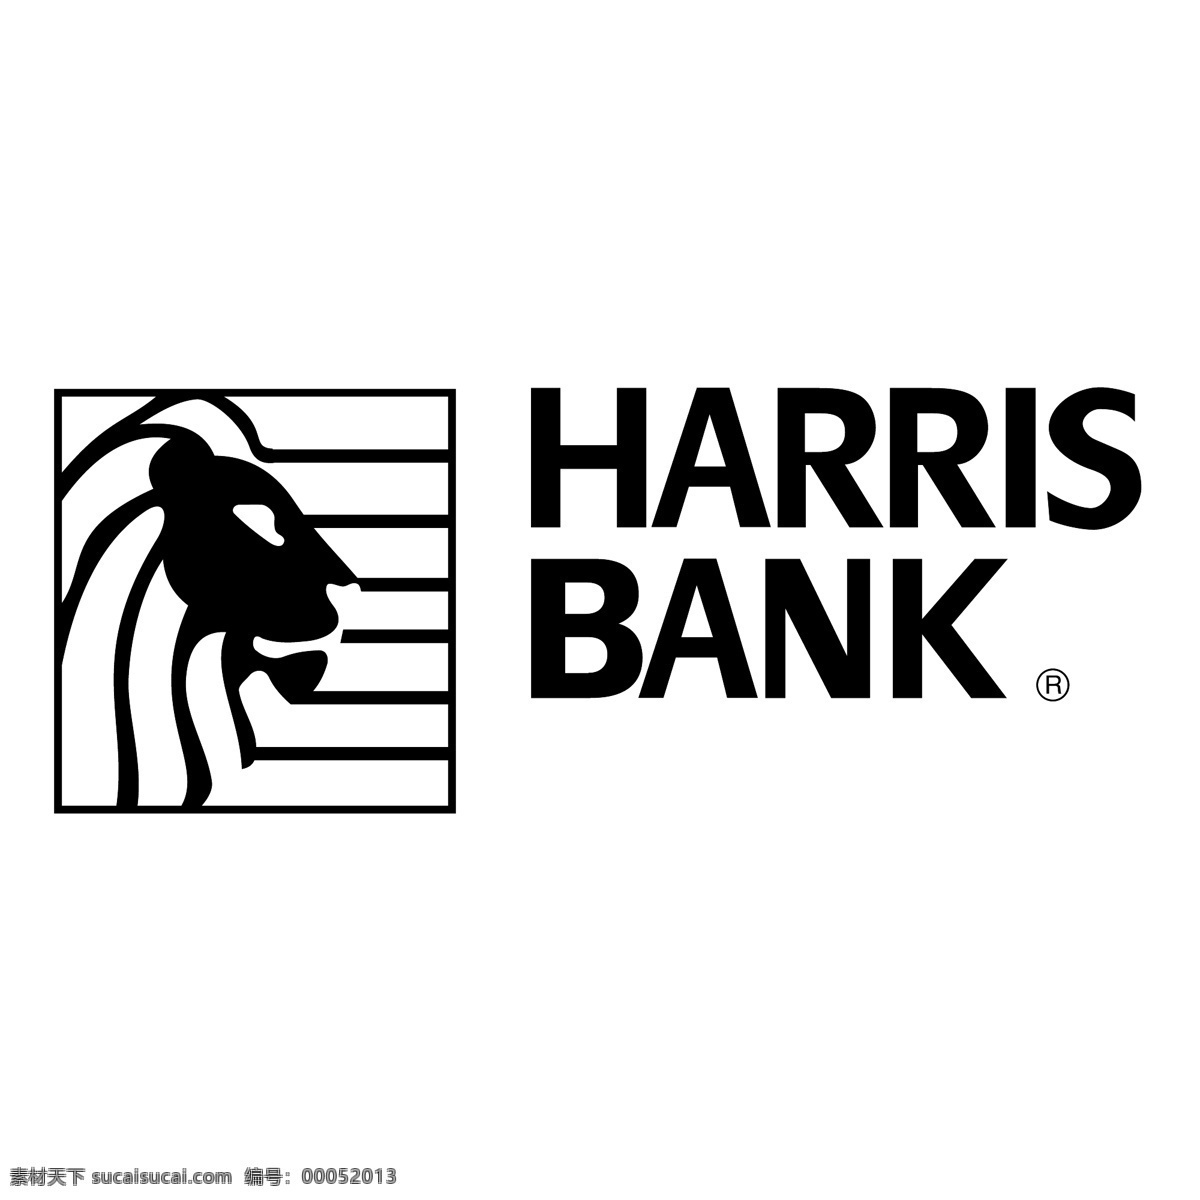 哈里斯 银行 哈里斯银行0 矢量图 其他矢量图